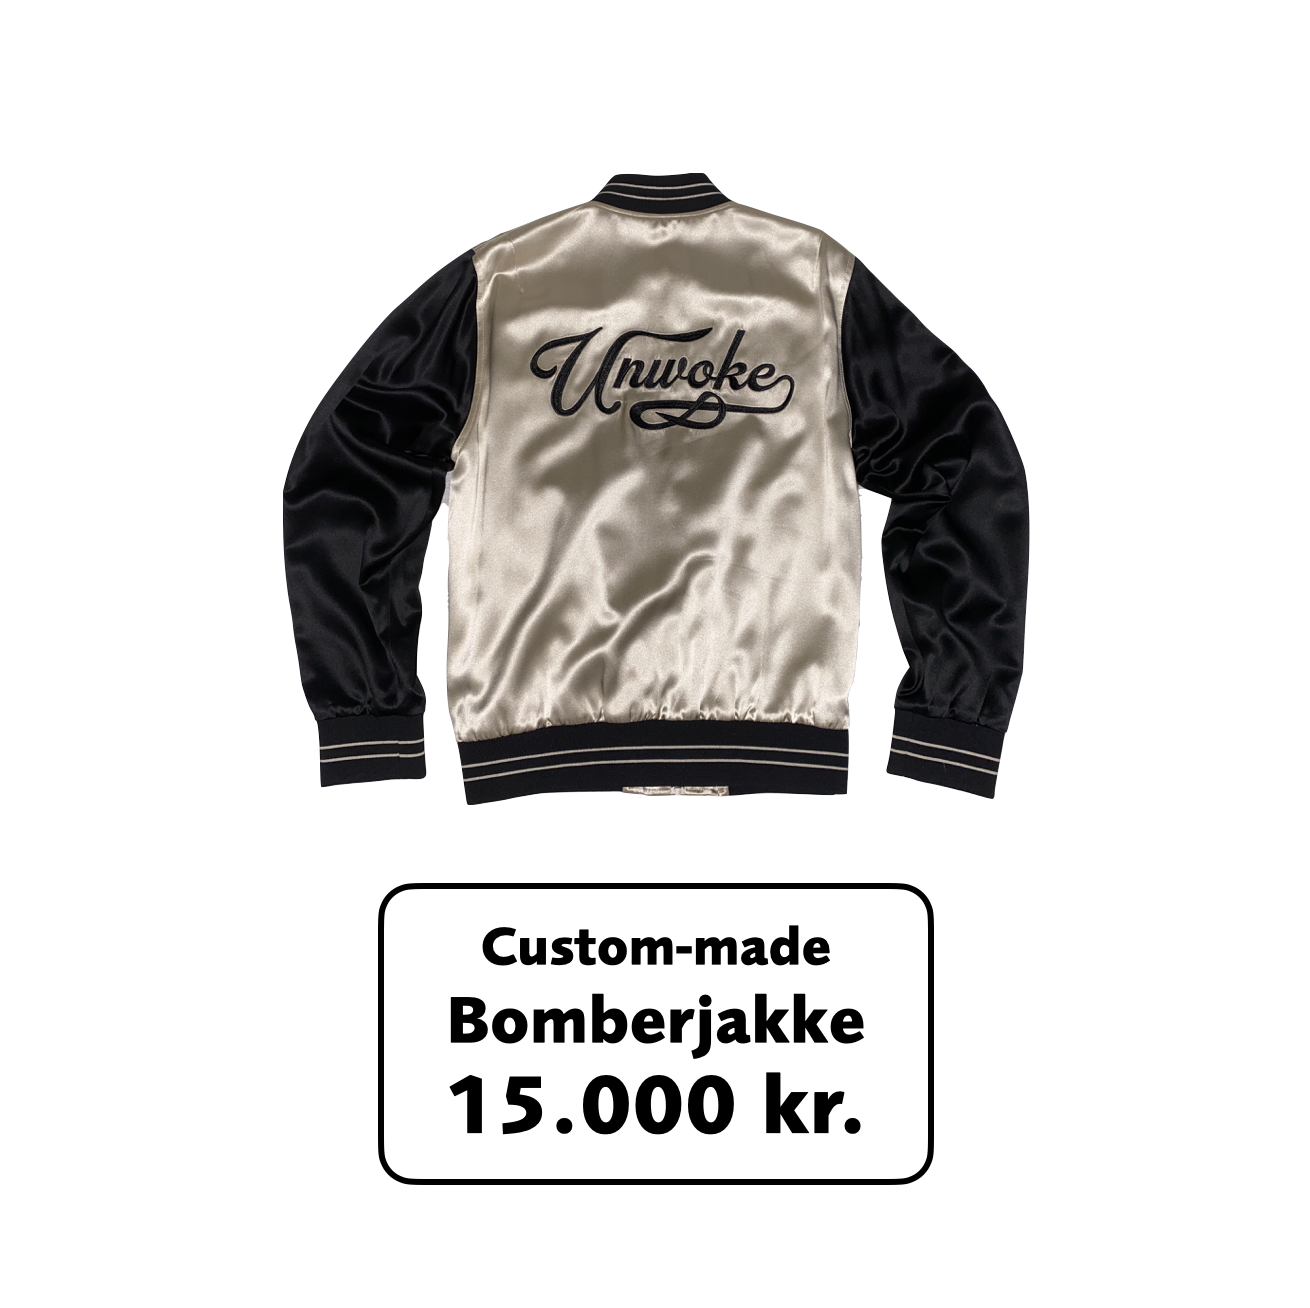 Unwoke" bomberjakke i silkesatin m. broderi — Dansk